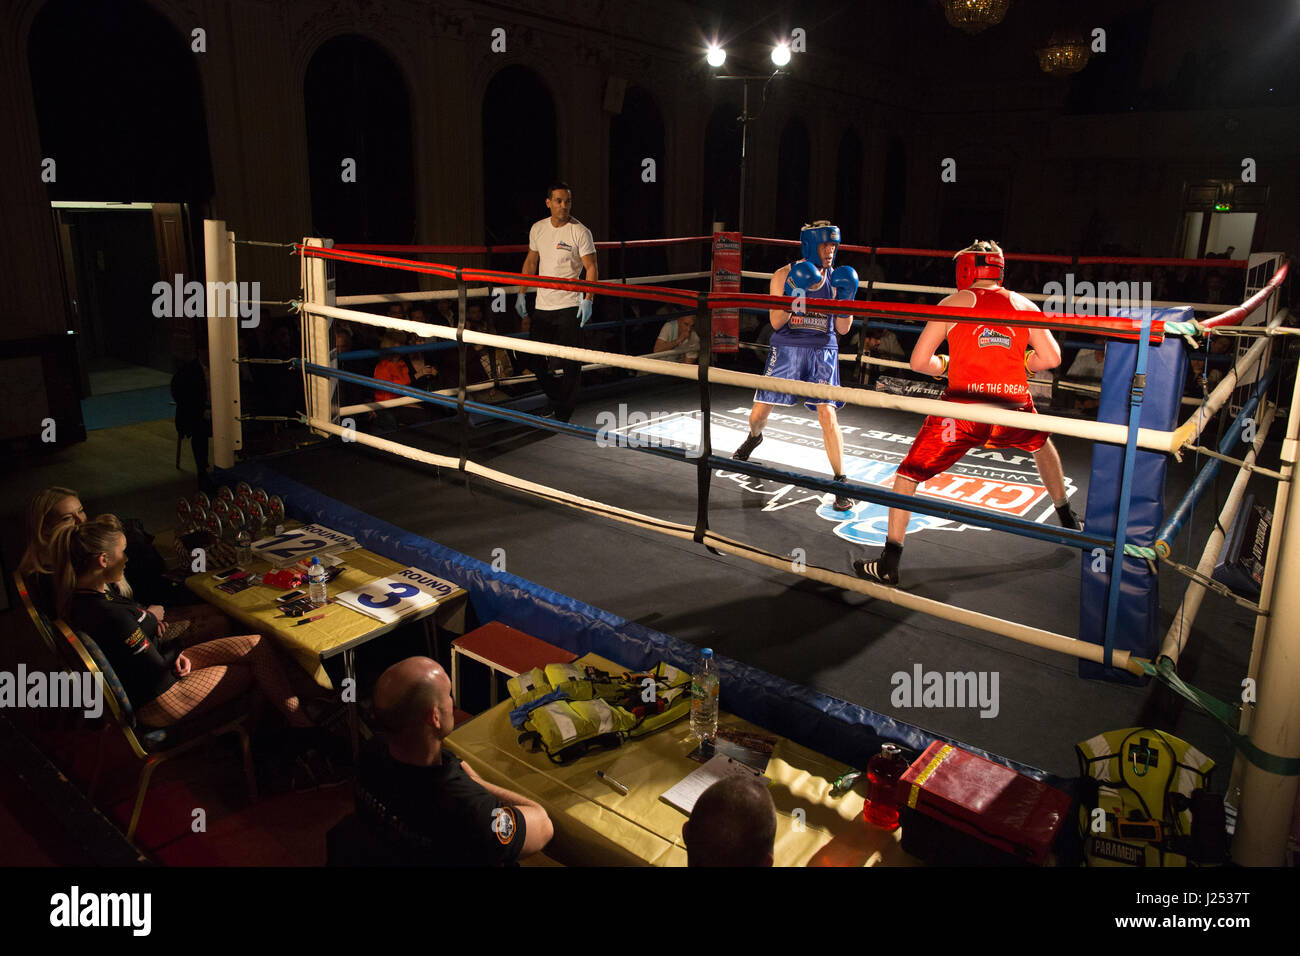 Sammeln Sie weißer Kragen Fight Club, weiß-Box-Event in Stratford Town Hall, organisiert vom Londoner City Warriors Boxclub, England, UK Stockfoto